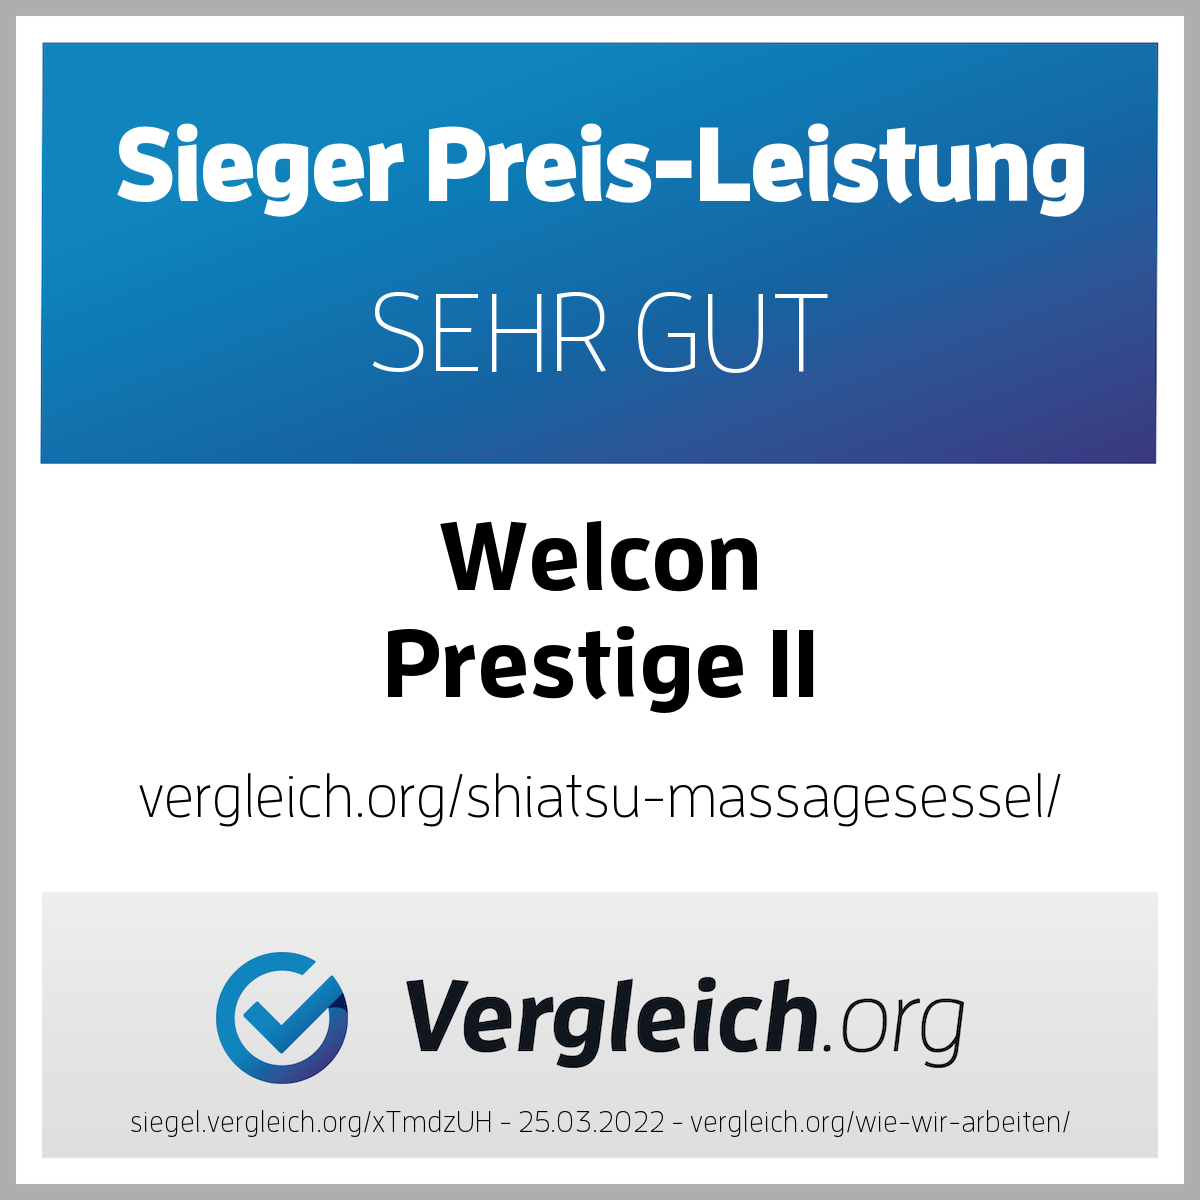 Massagesessel WELCON Prestige II in beige / braun